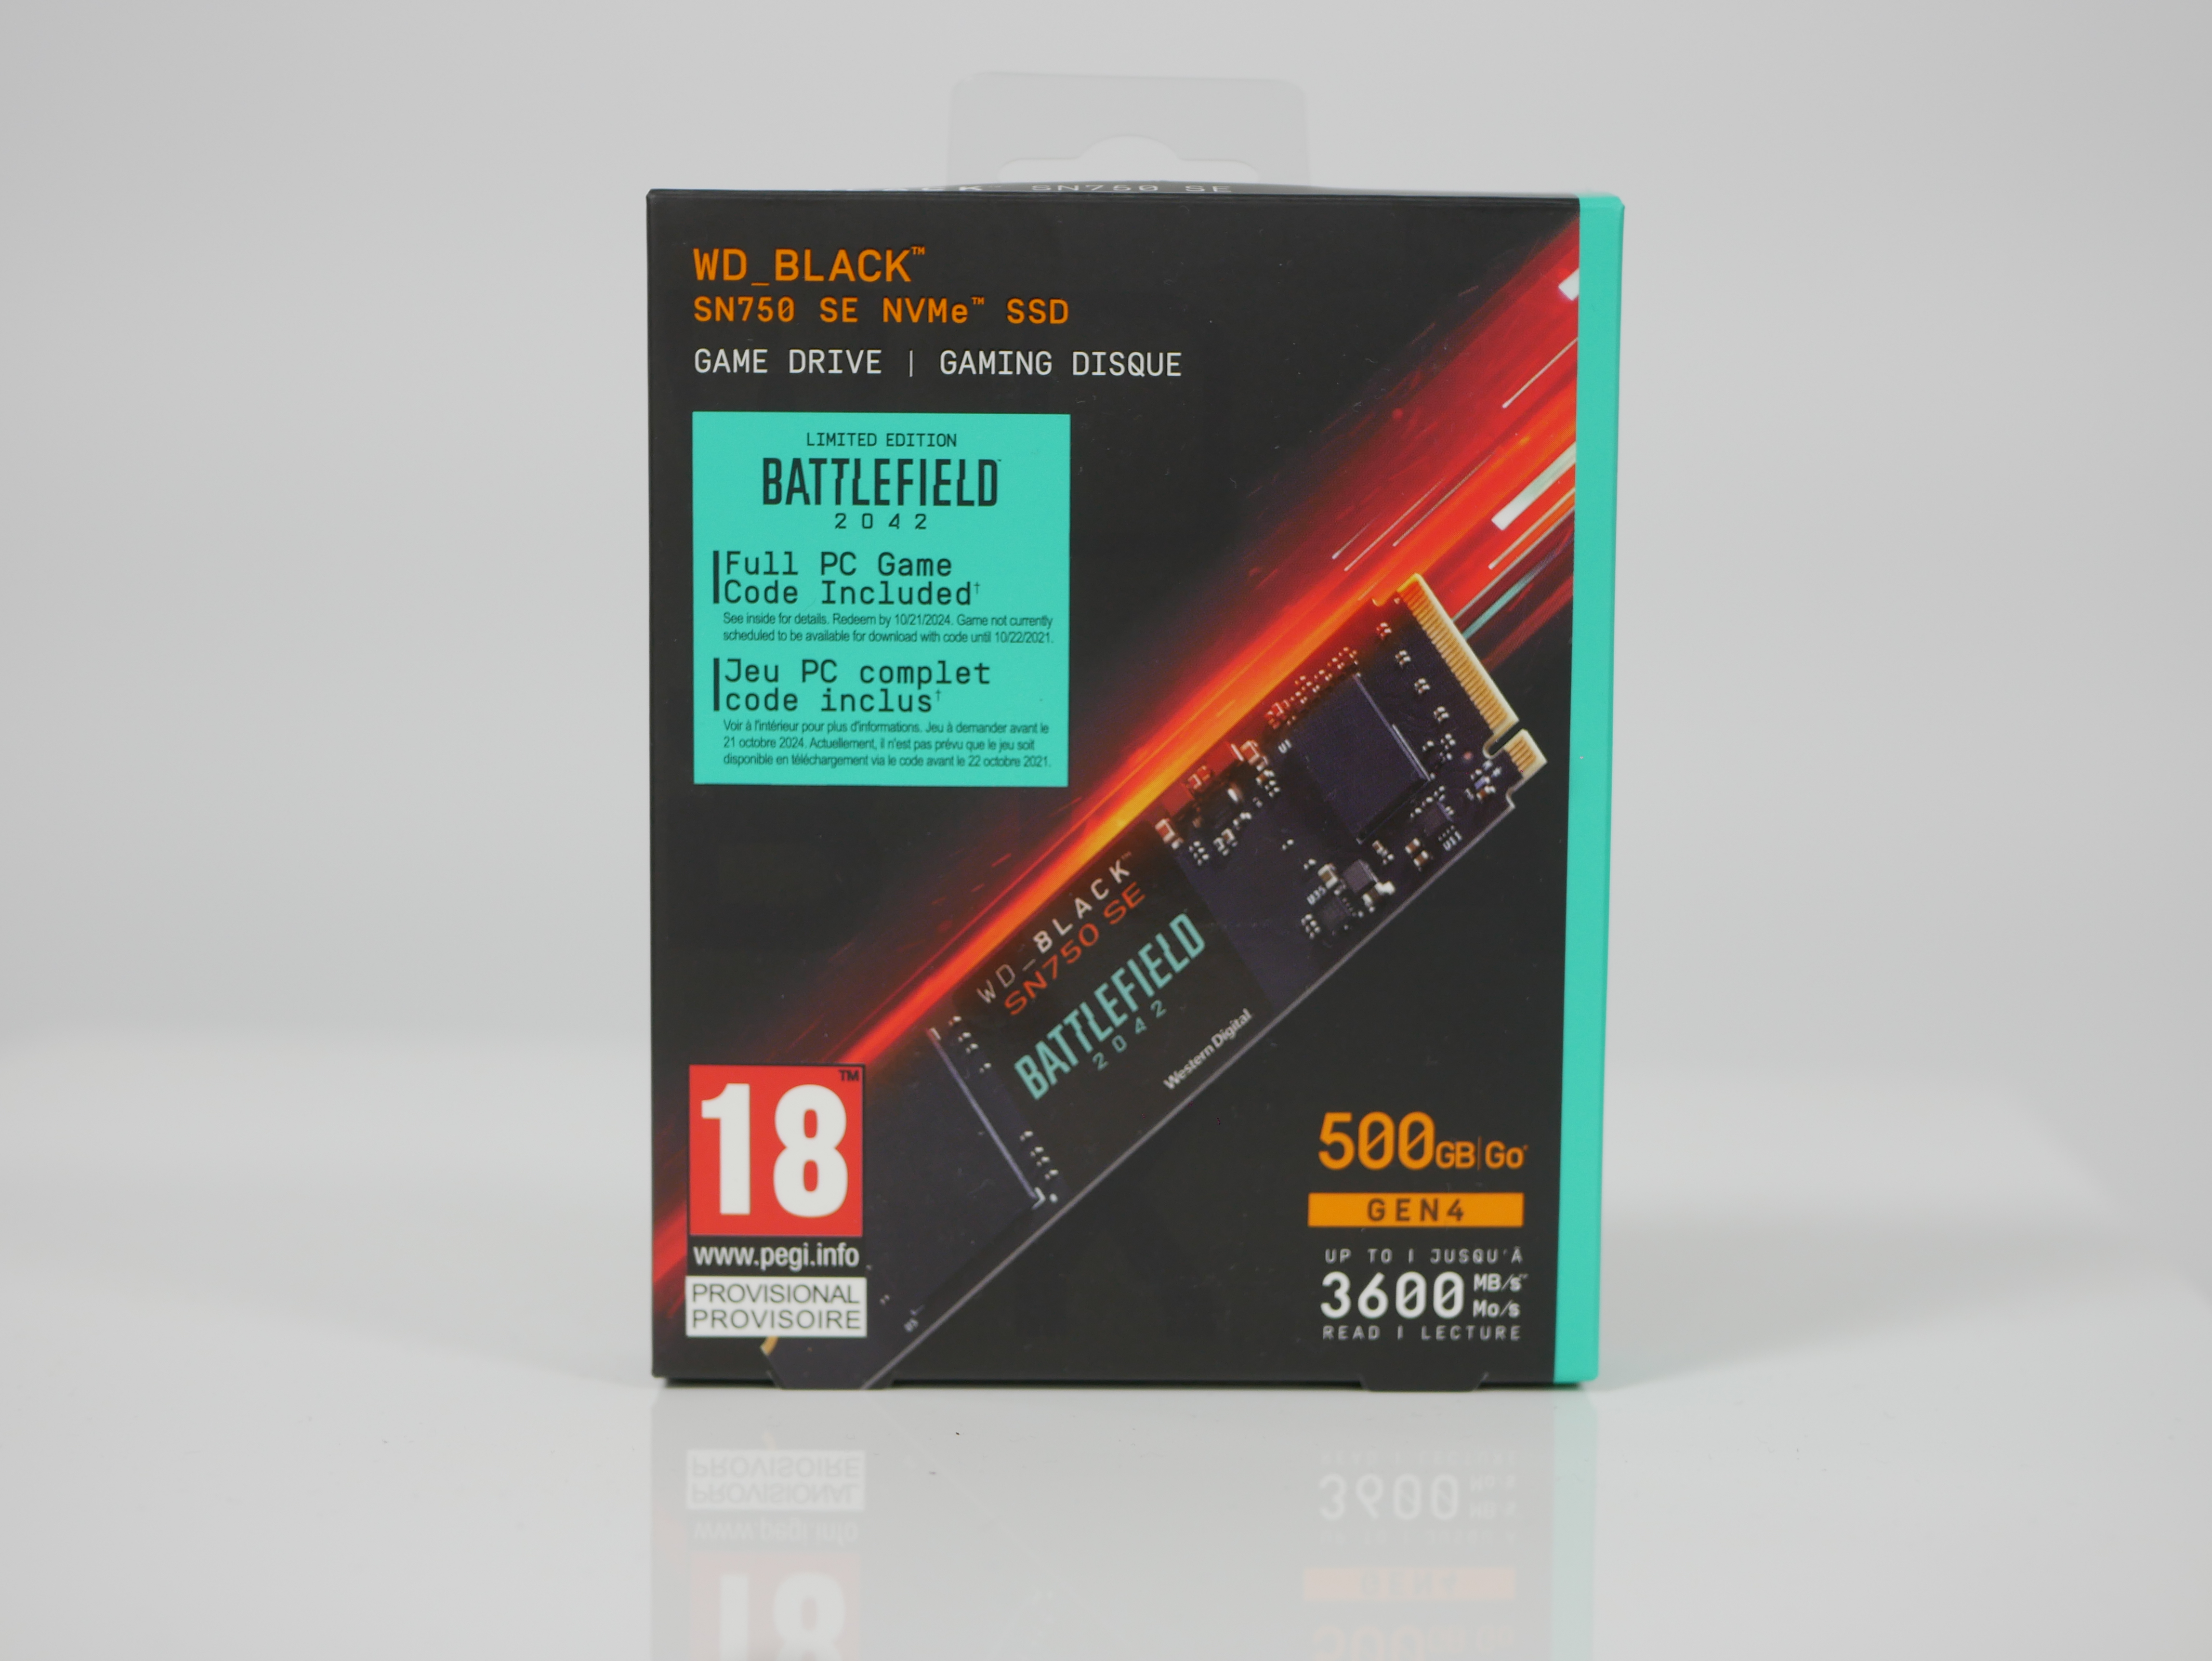 WD_BLACK SN750 SE NVMe SSD Battlefield 2042 - recenze